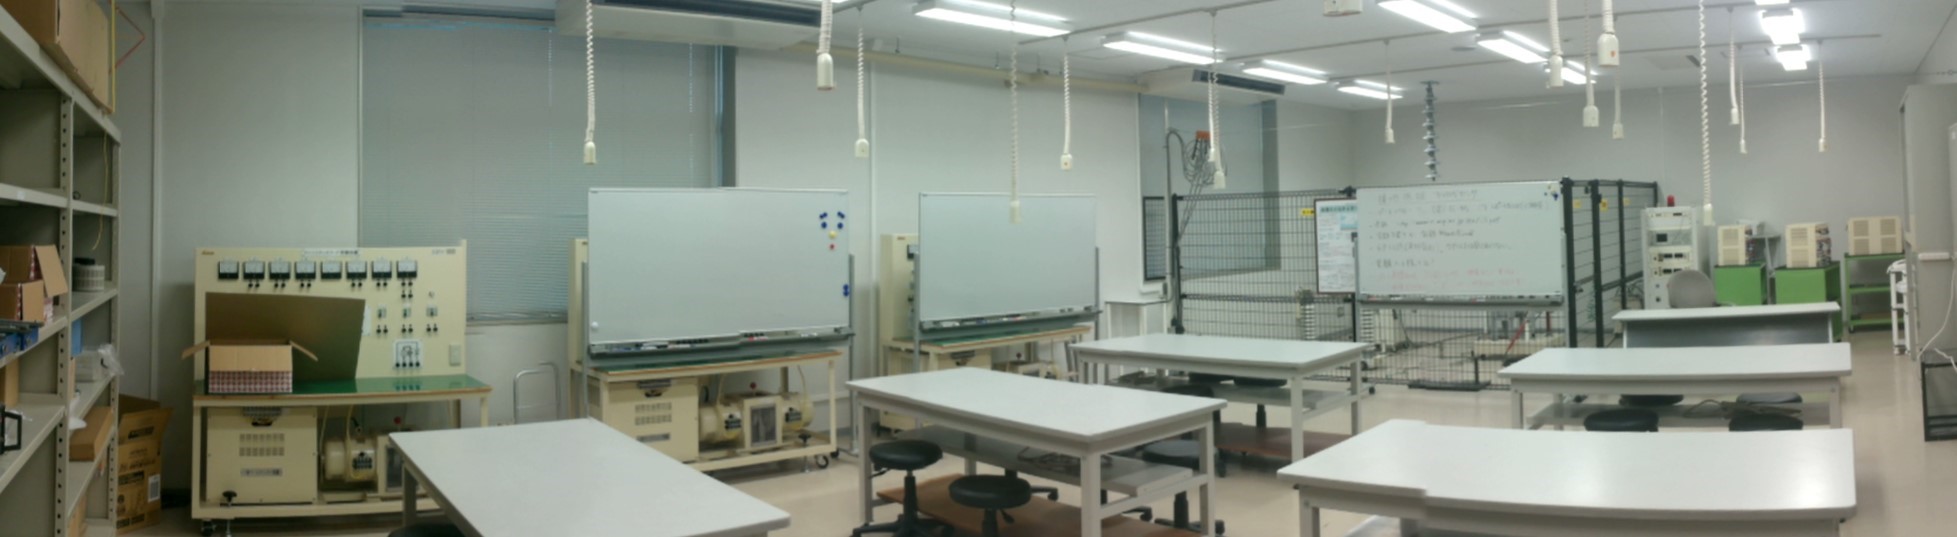 電子システム工学科C7棟学生実験室の写真